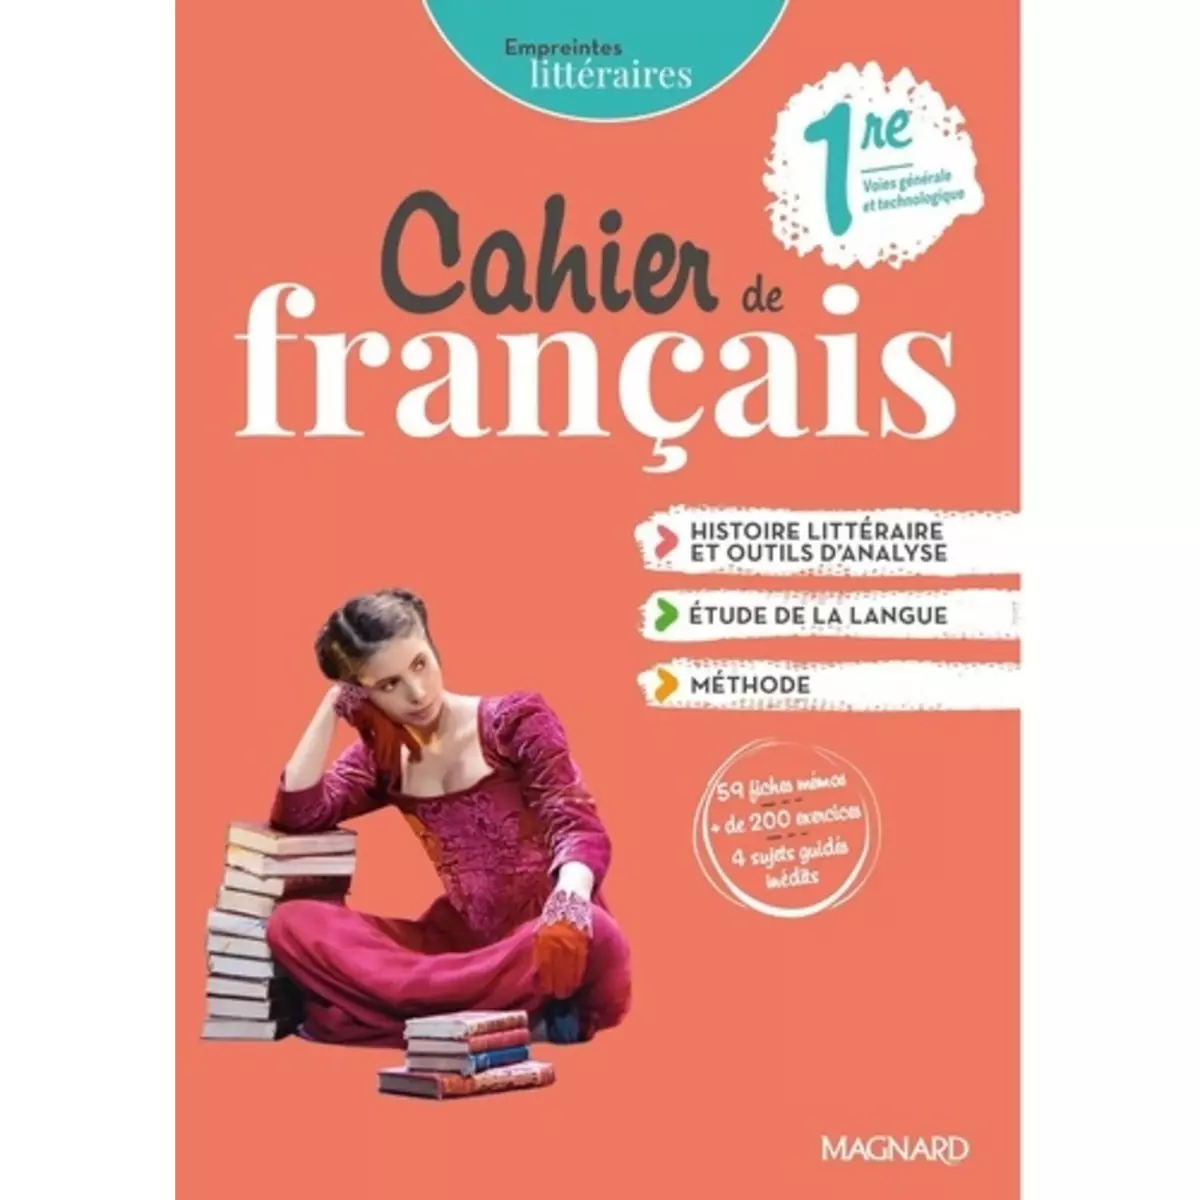  EMPREINTES LITTERAIRES 1RE. CAHIER DE FRANCAIS, EDITION 2021, Randanne Florence